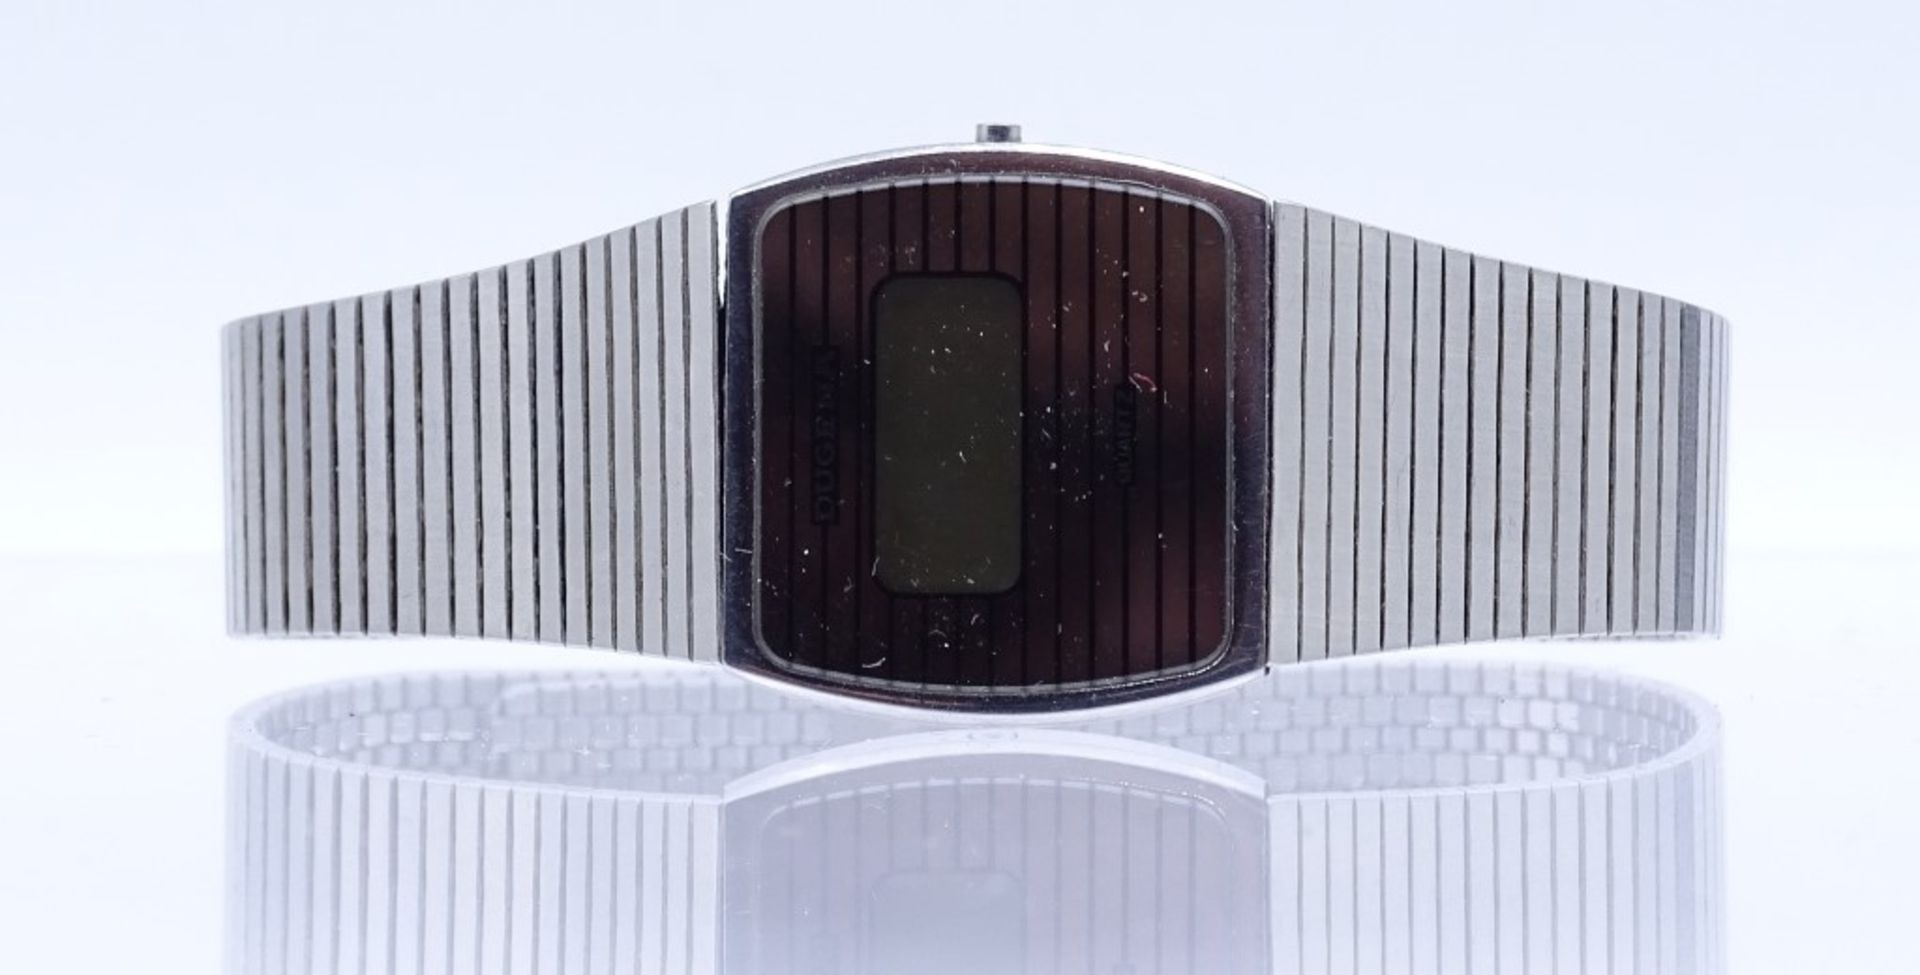 Armbanduhr "Dugena";Quartz,Edelstahl,Gehäuse 25x23mm, Funktion nicht überprüft